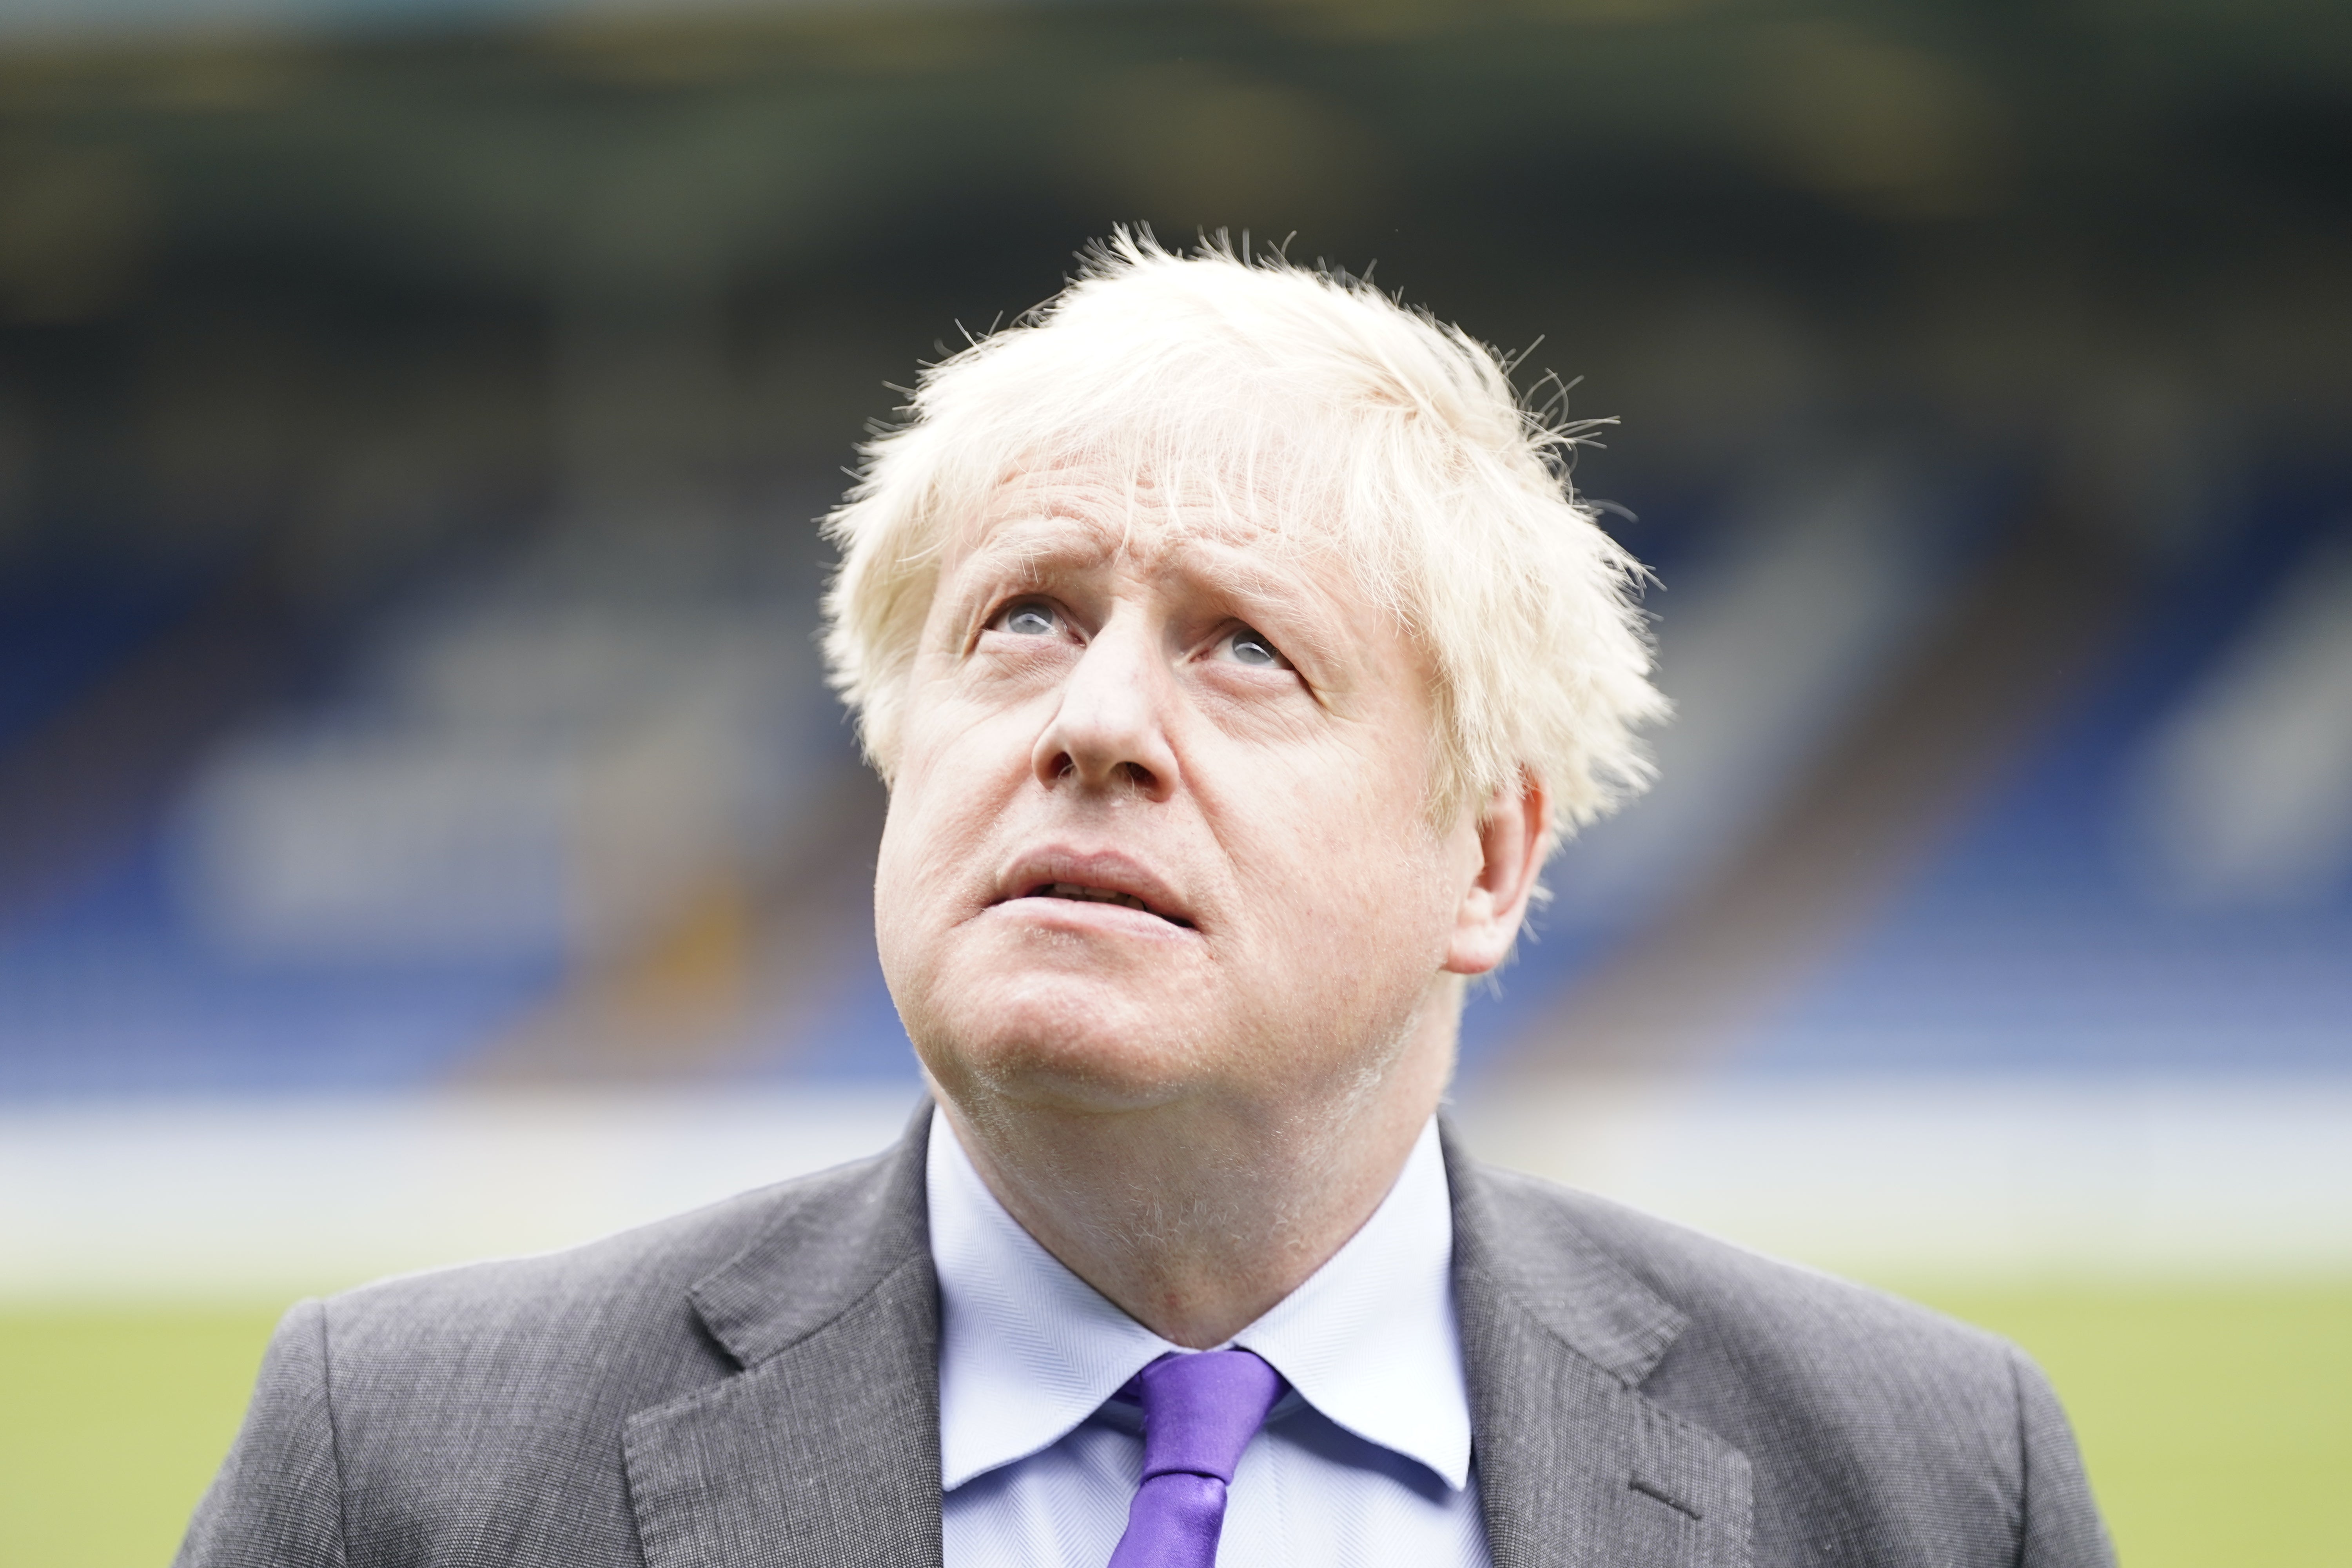 Boris Johnson is finding himself under renewed pressure